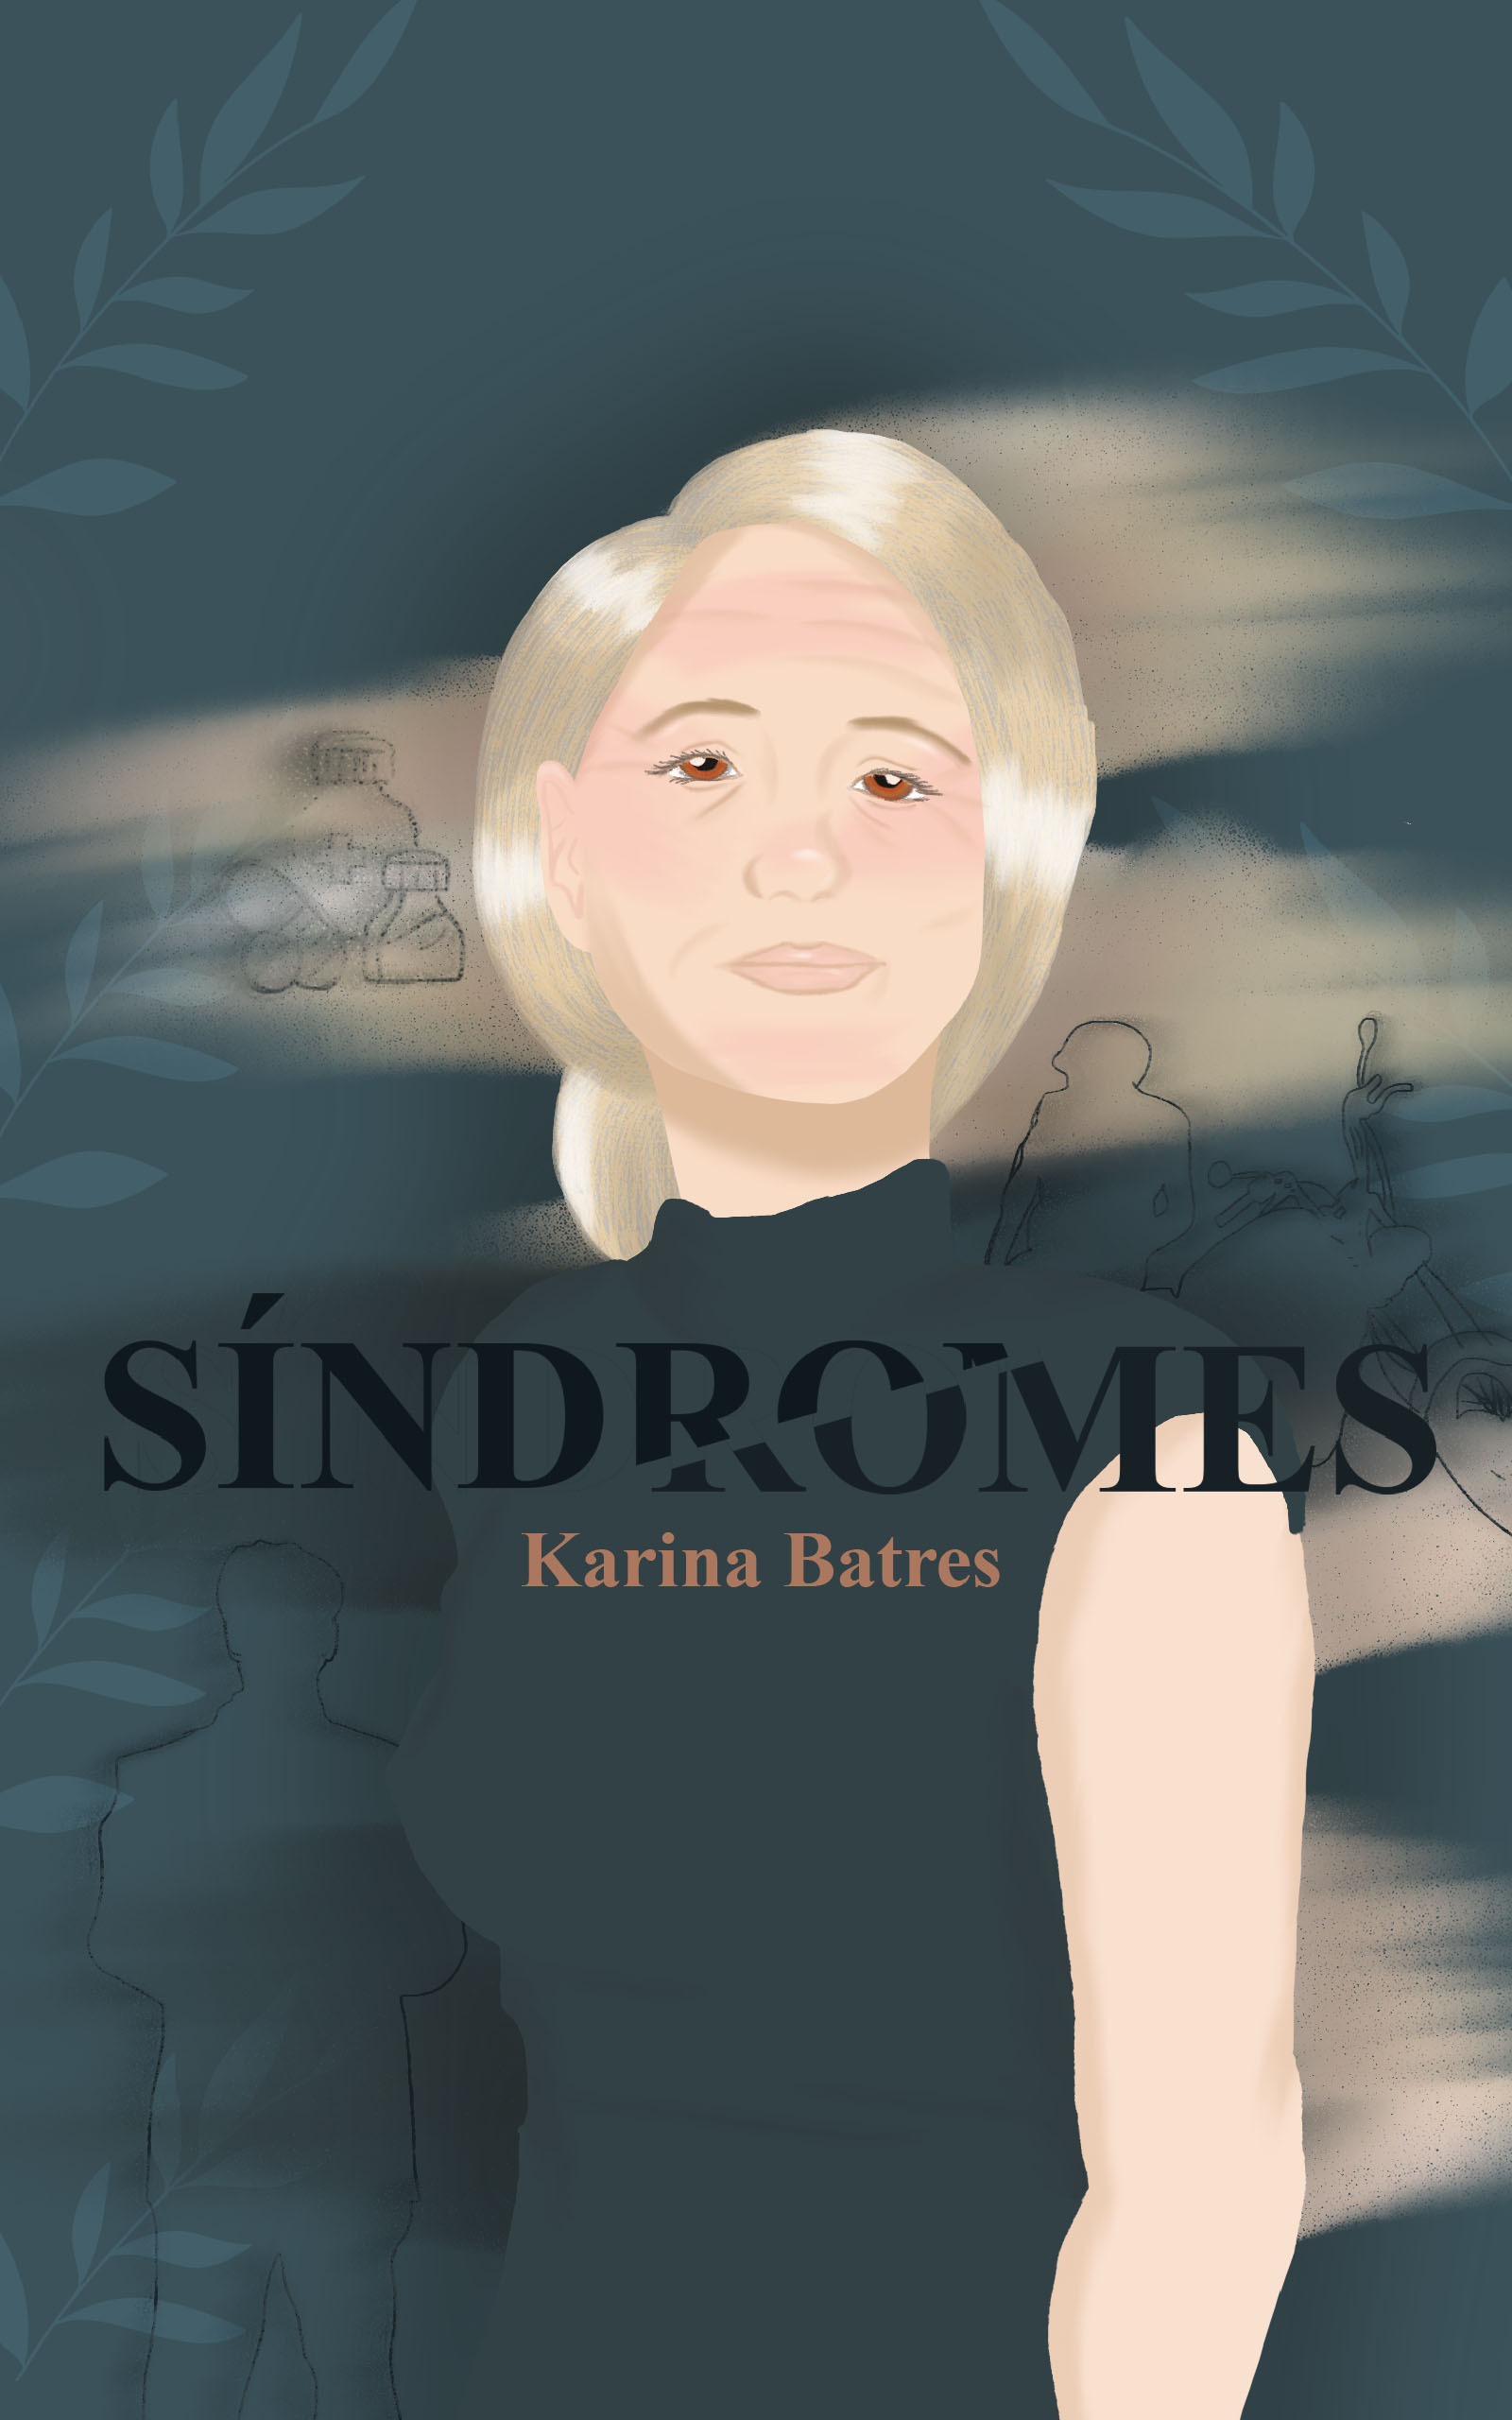 Síndromes, de Karina Batres